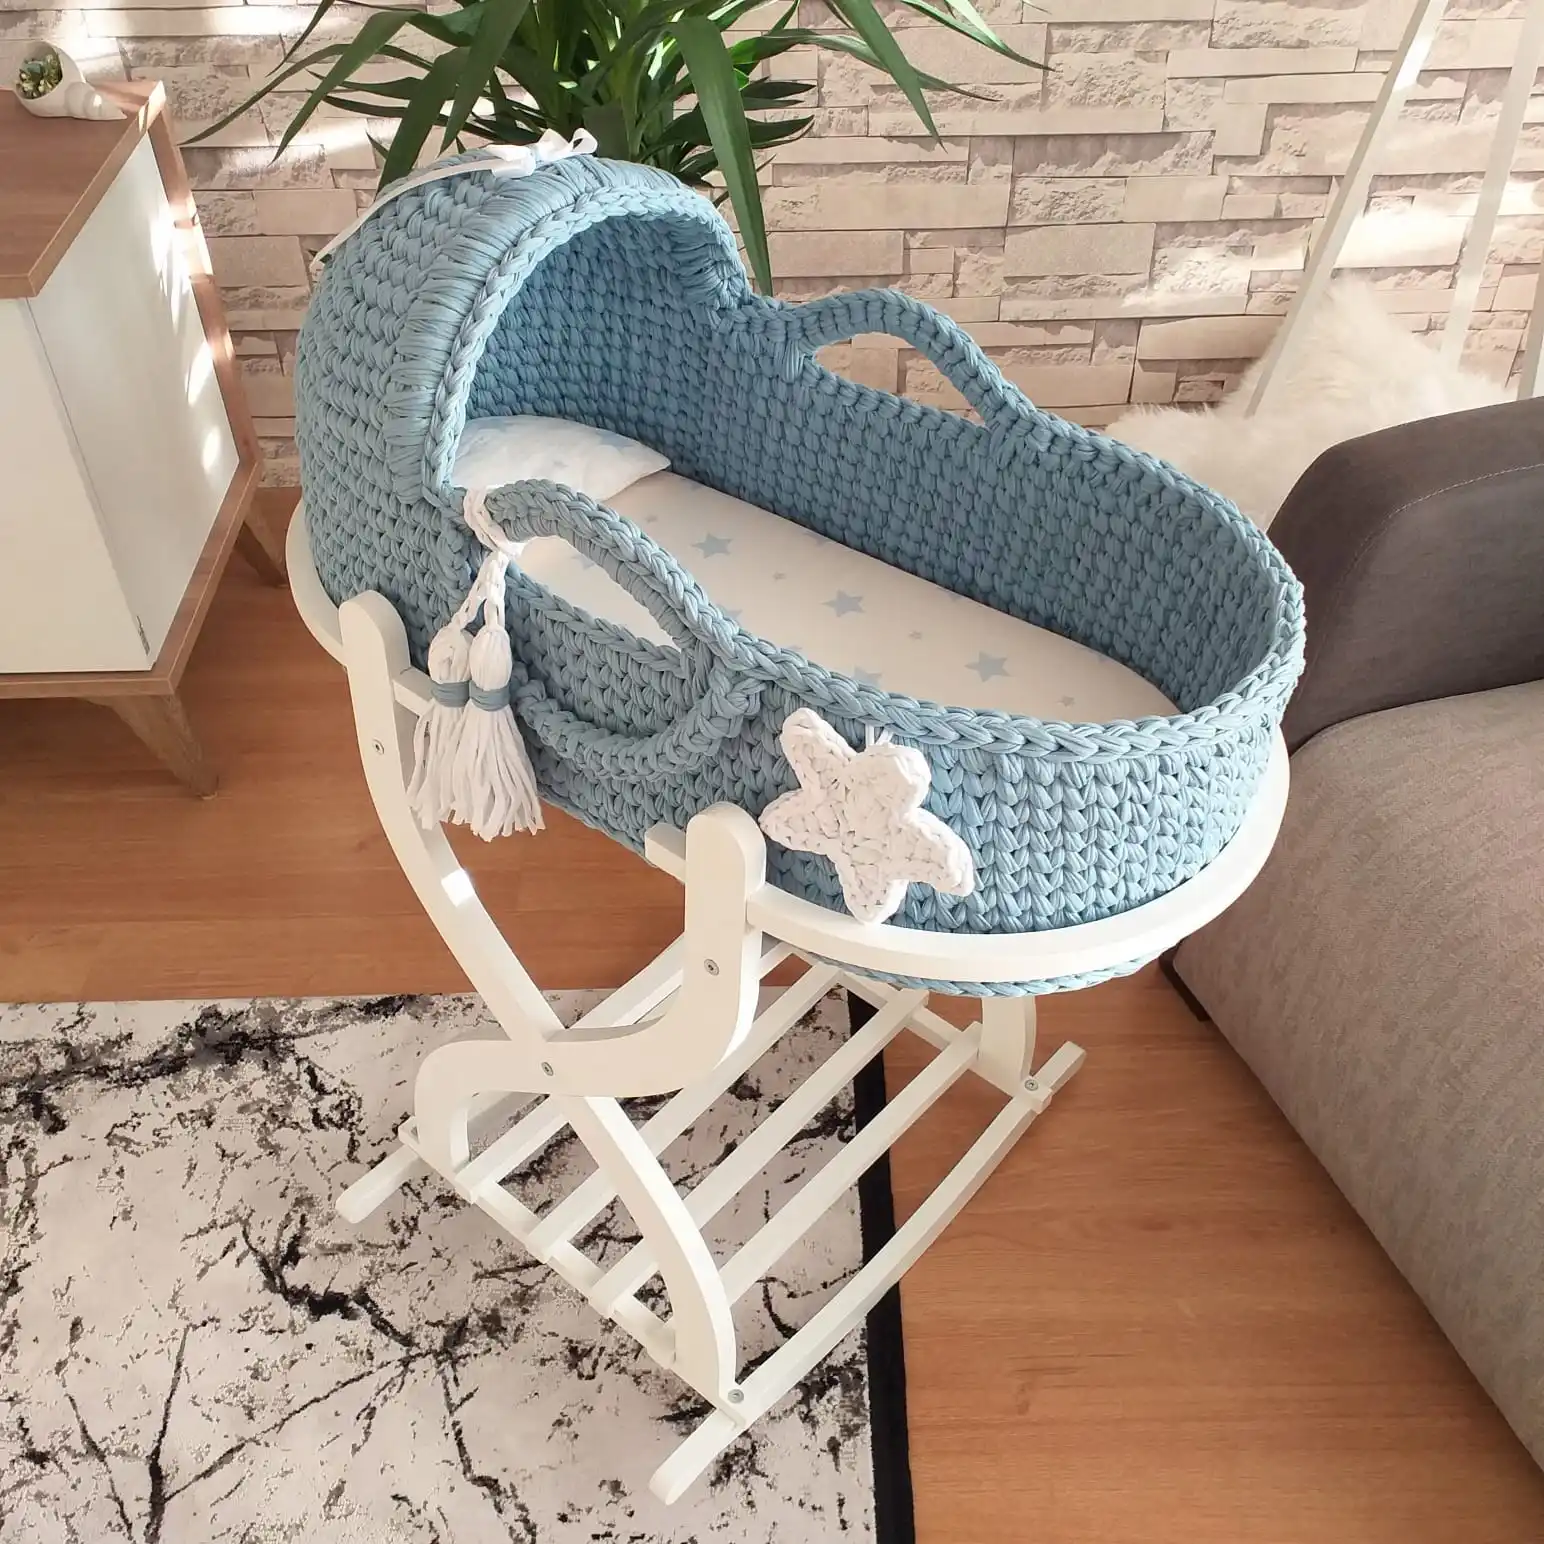 Jaju Baby Moses Basket Blue Knitted Stroller, newborn baby basket, baby basket, handmade baby knitting basket